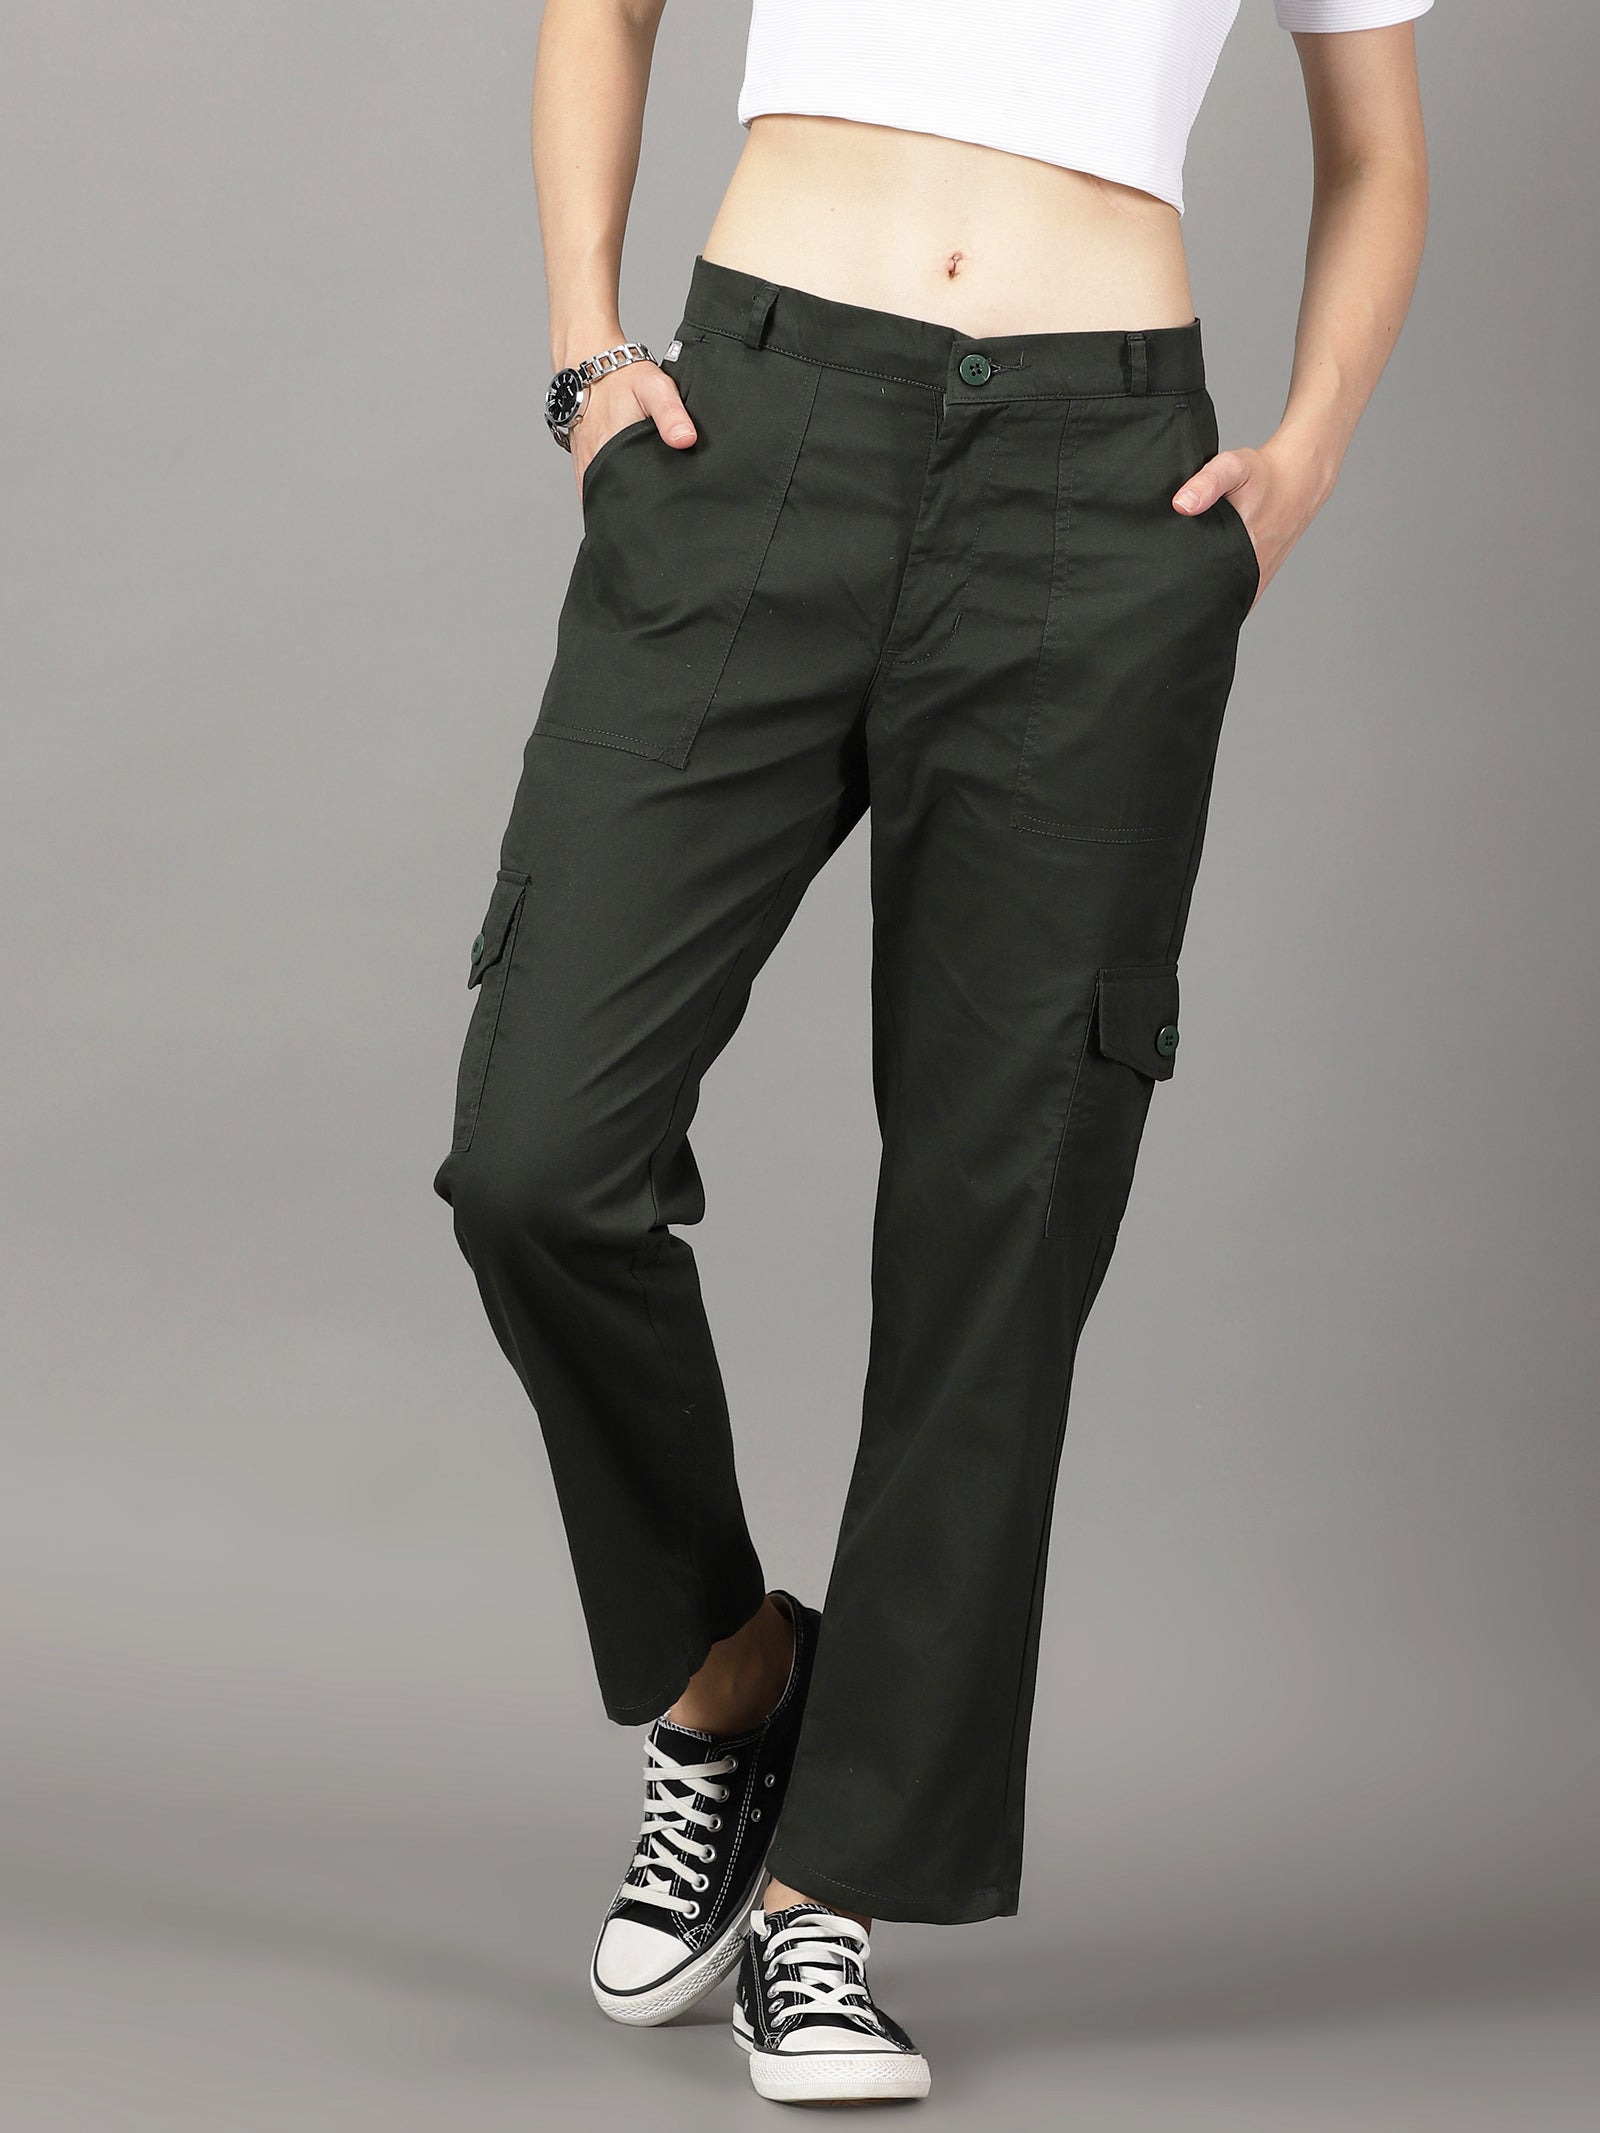 Cargo Trousers – Fashion Trendz